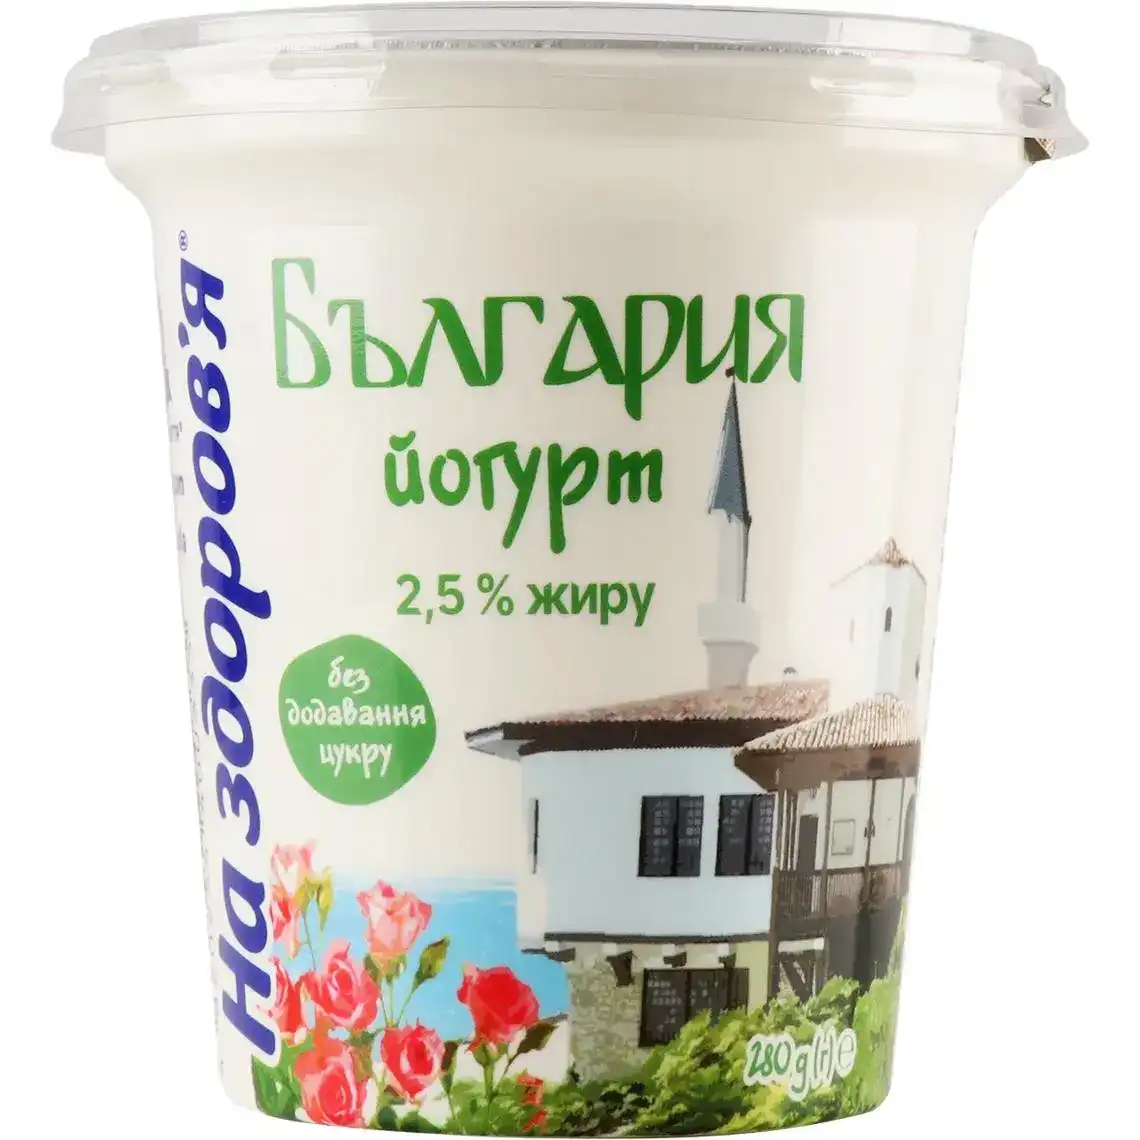 Йогурт На здоров'я Болгарьский 2.5% 280 г